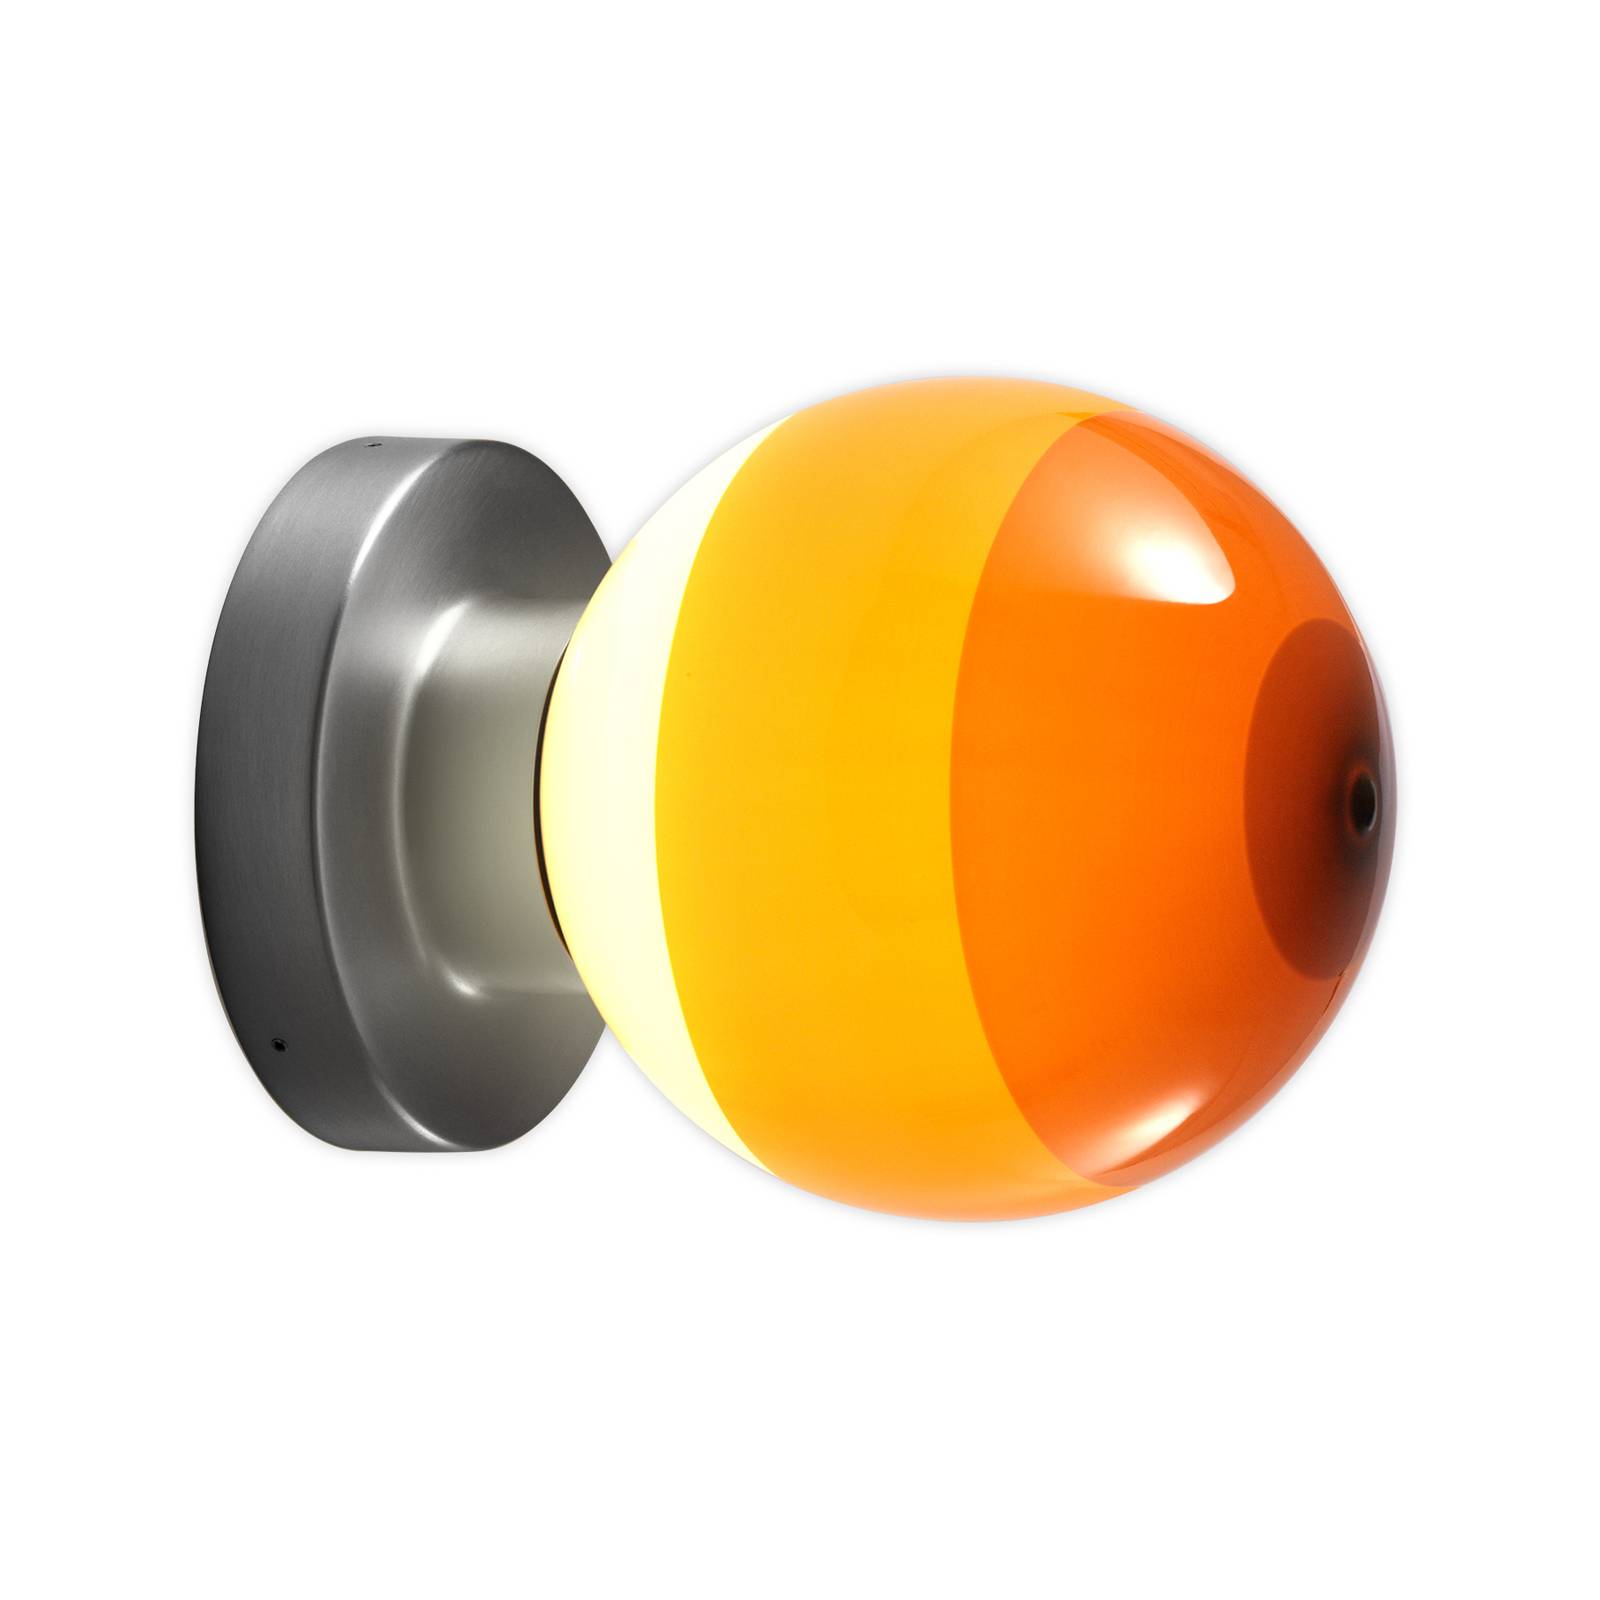 MARSET Dipping Light A2 LED-Wandlampe, orange/grau von Marset